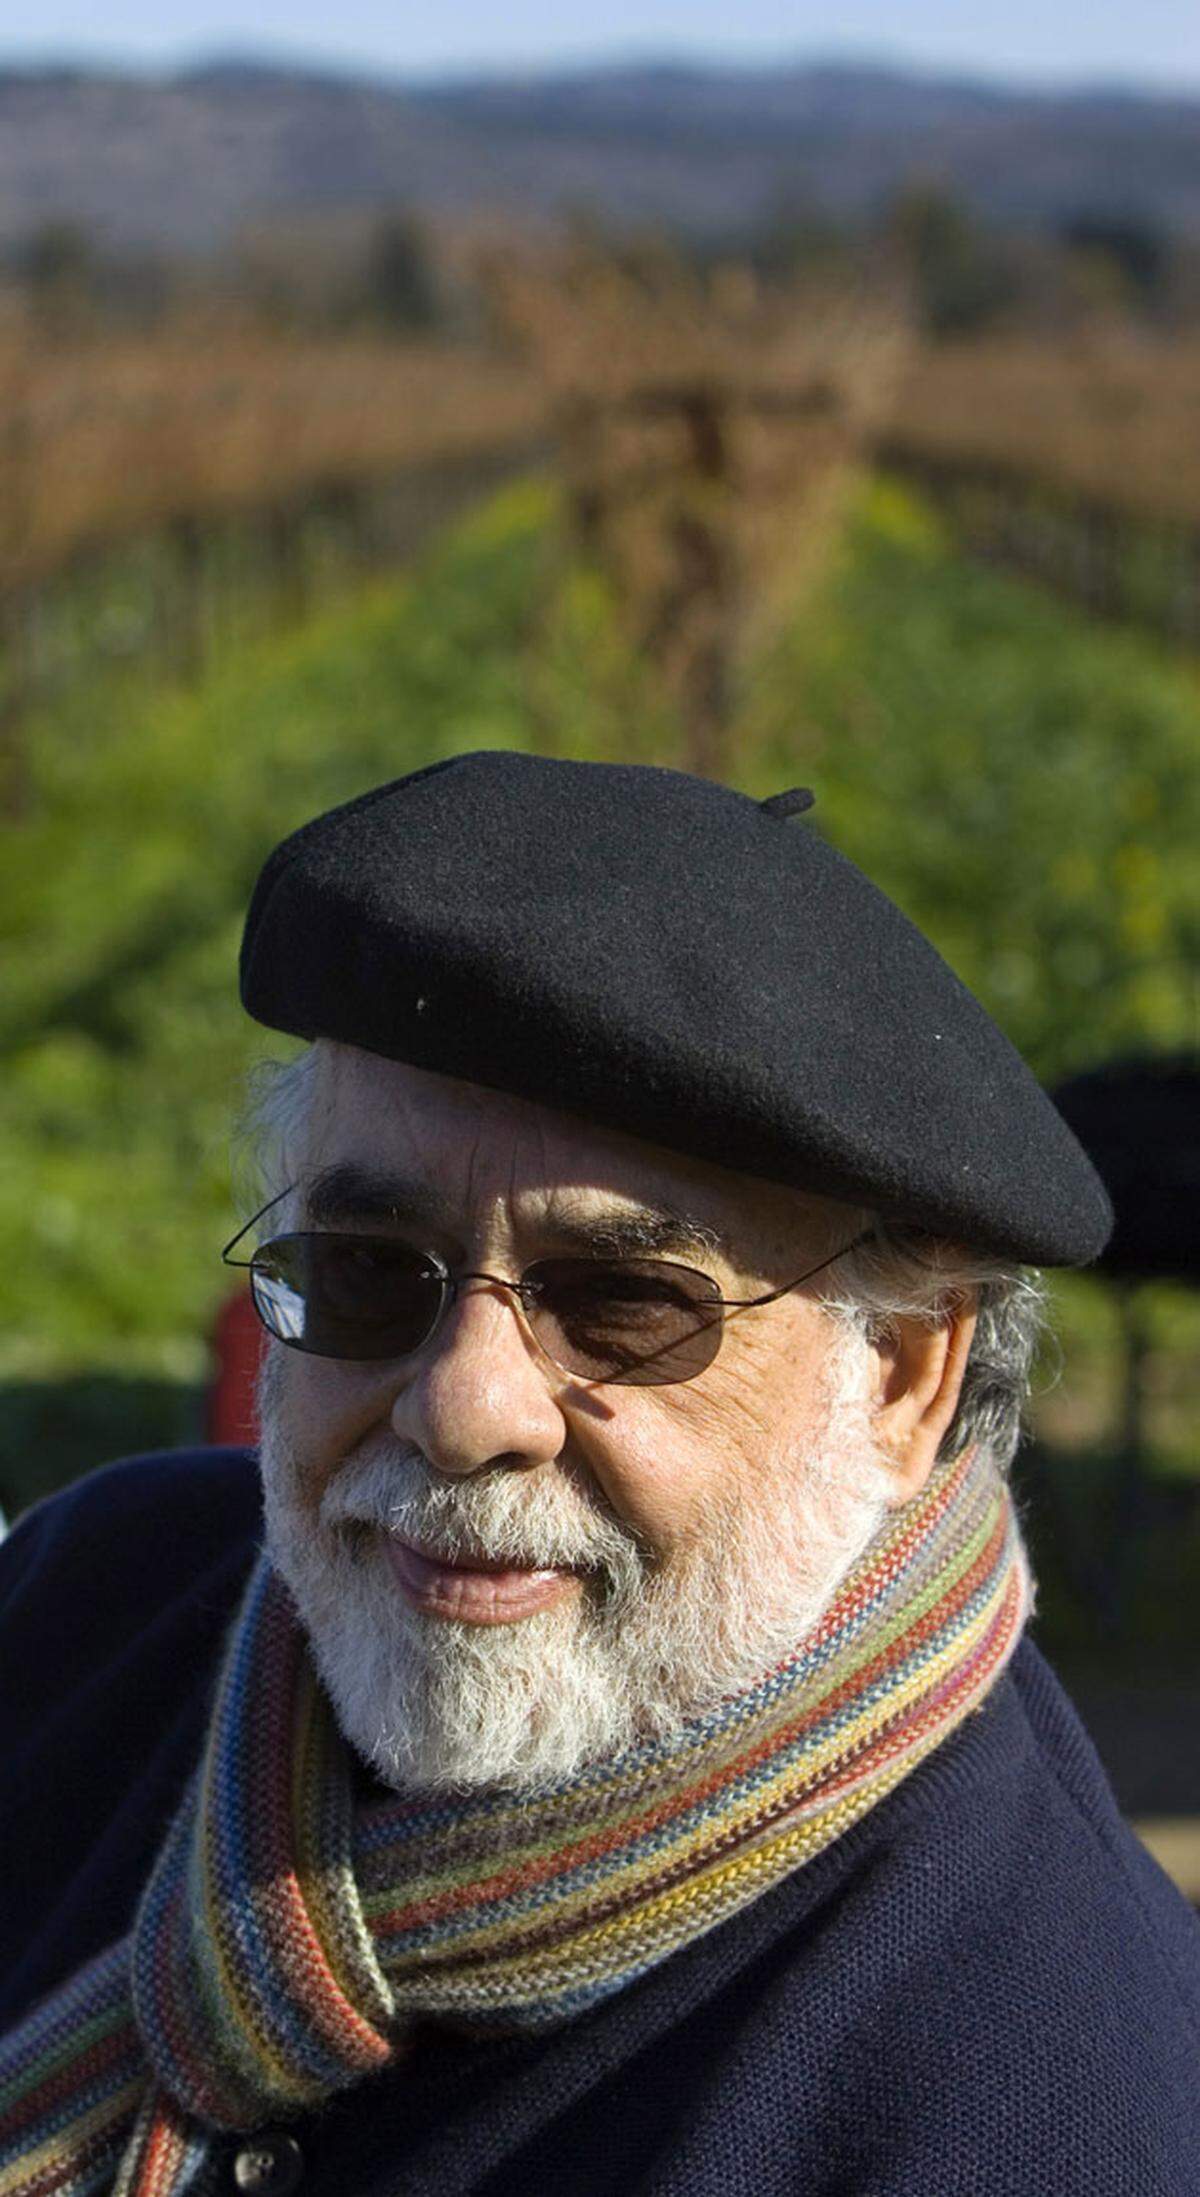 Das Gegenbeispiel: Kultregisseur Francis Ford Coppola verbucht im Weinbau seit Jahren große Erfolge. 2007 kaufte er das ehemalige Ch teau Sovereign im Sonoma Valley und nannte es "Rosso und Bianco".